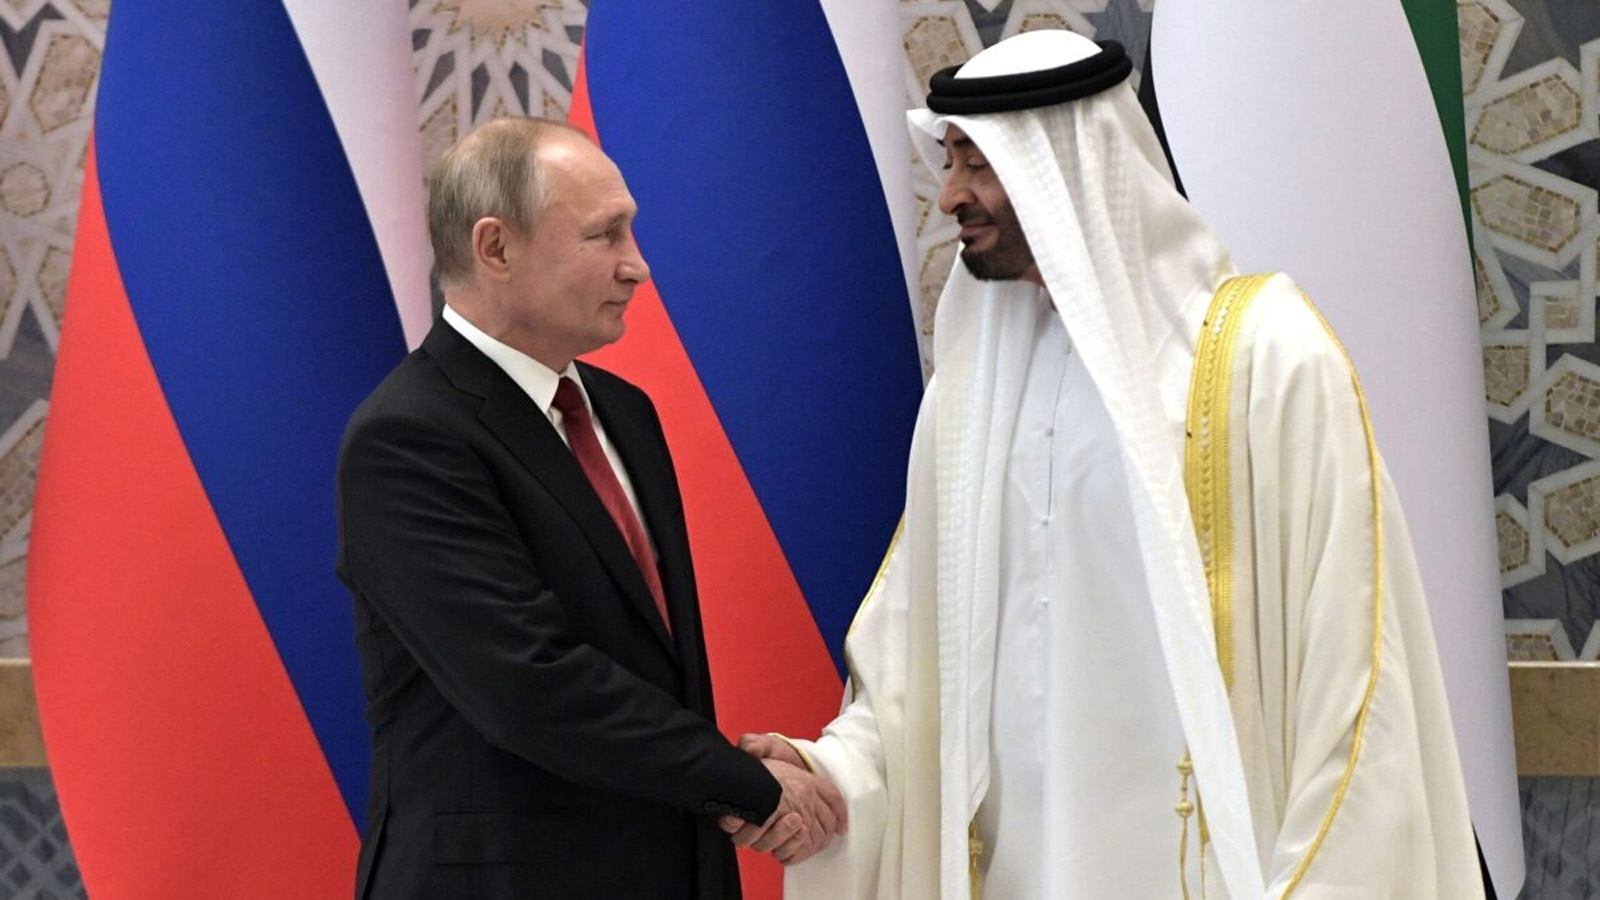 صورة من لقاء الرئيسين الروسي والإماراتي خلال زيارة فلاديمير بوتين الى دولة الإمارات.